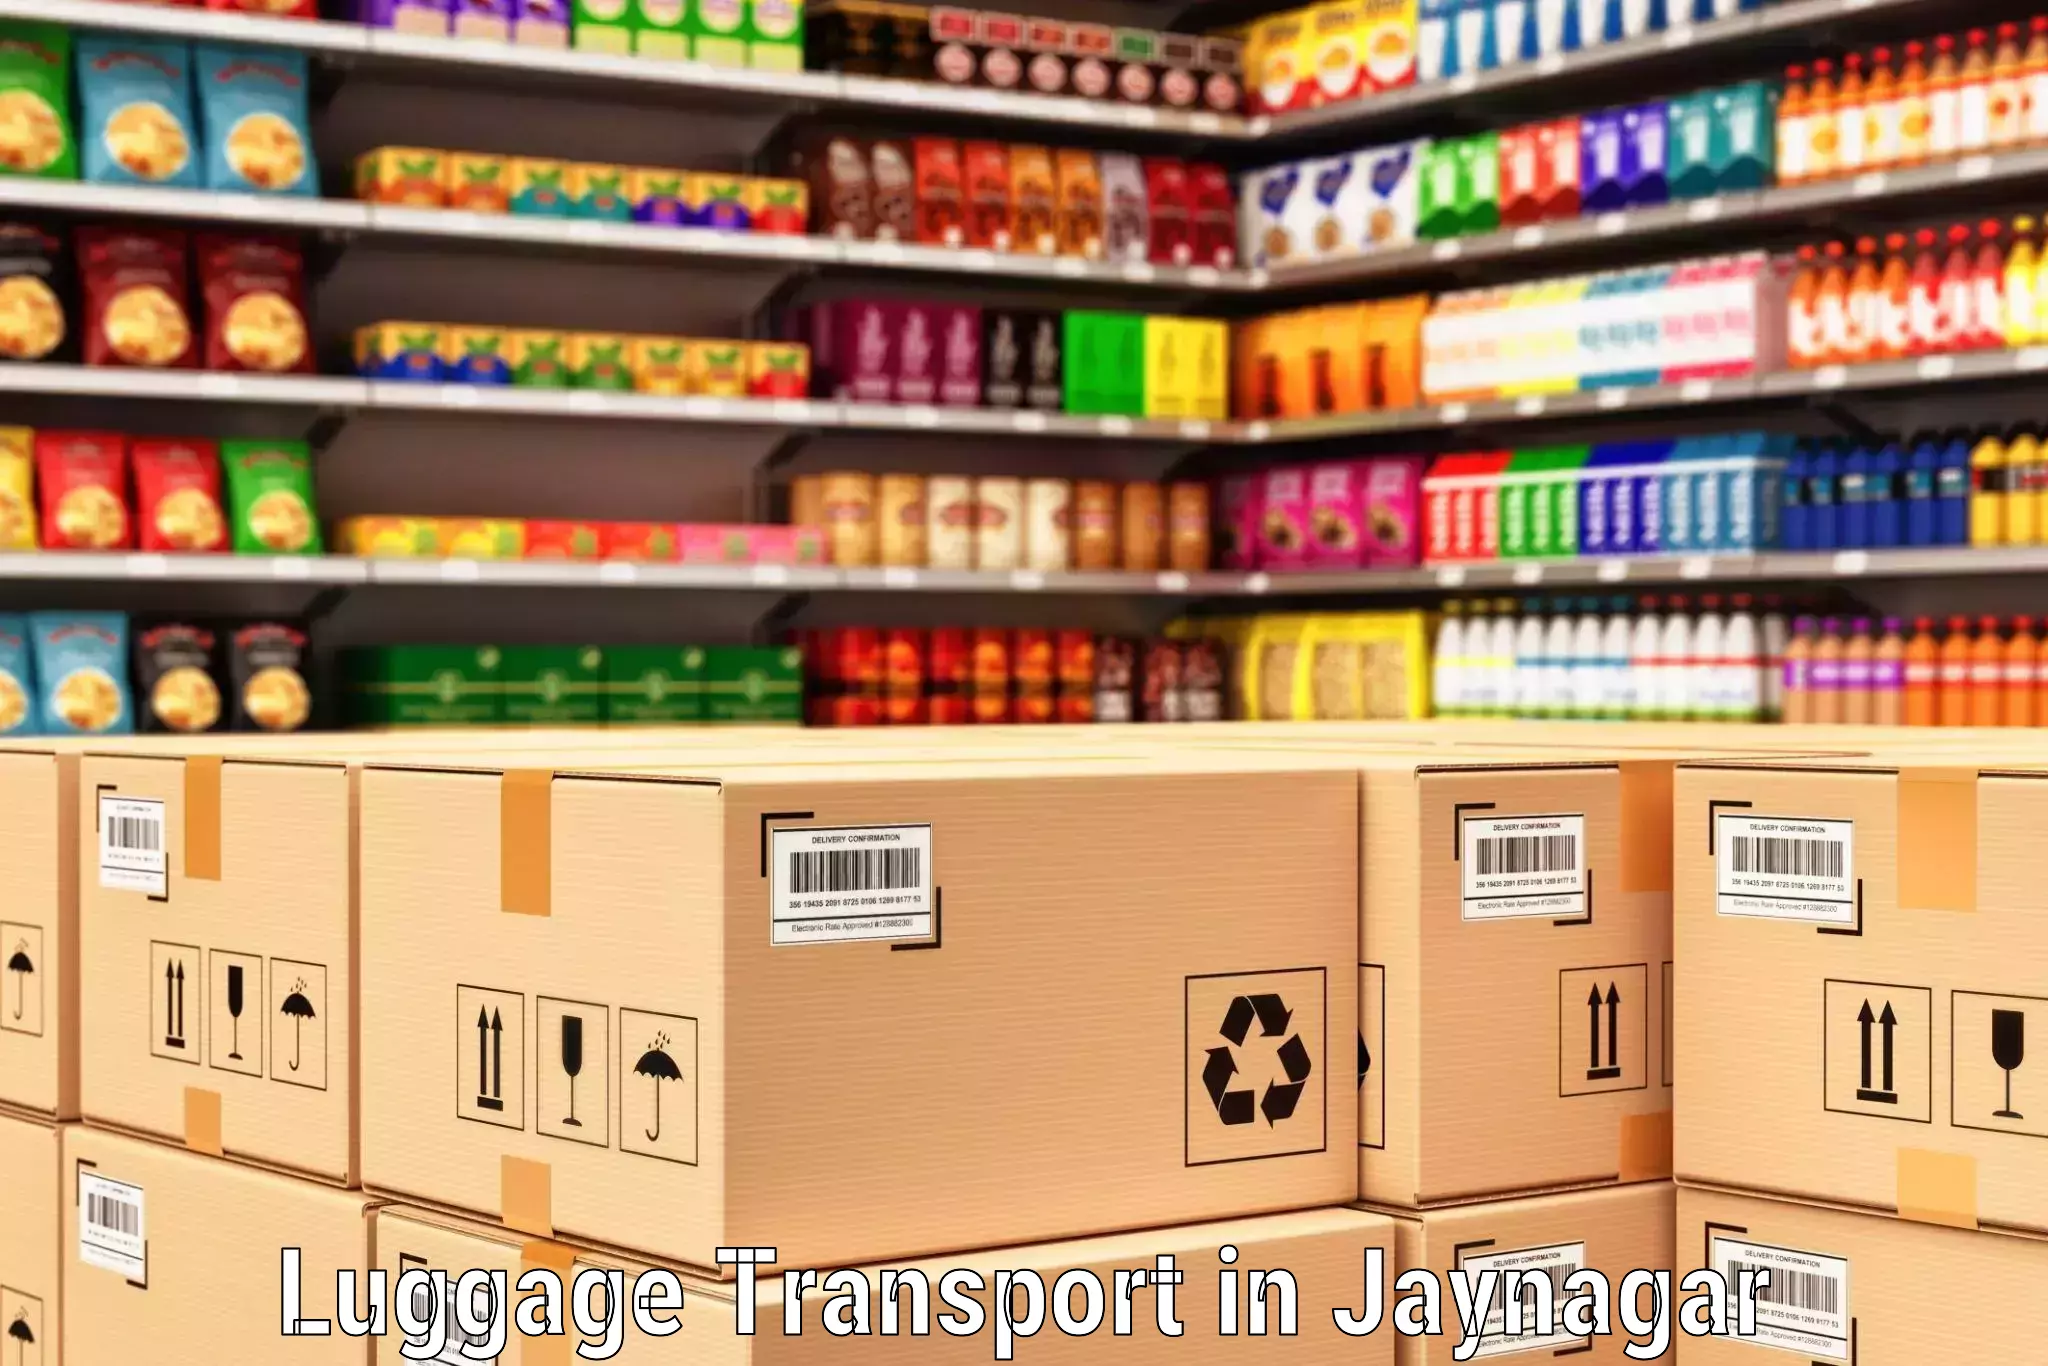 Regional luggage transport in Jaynagar